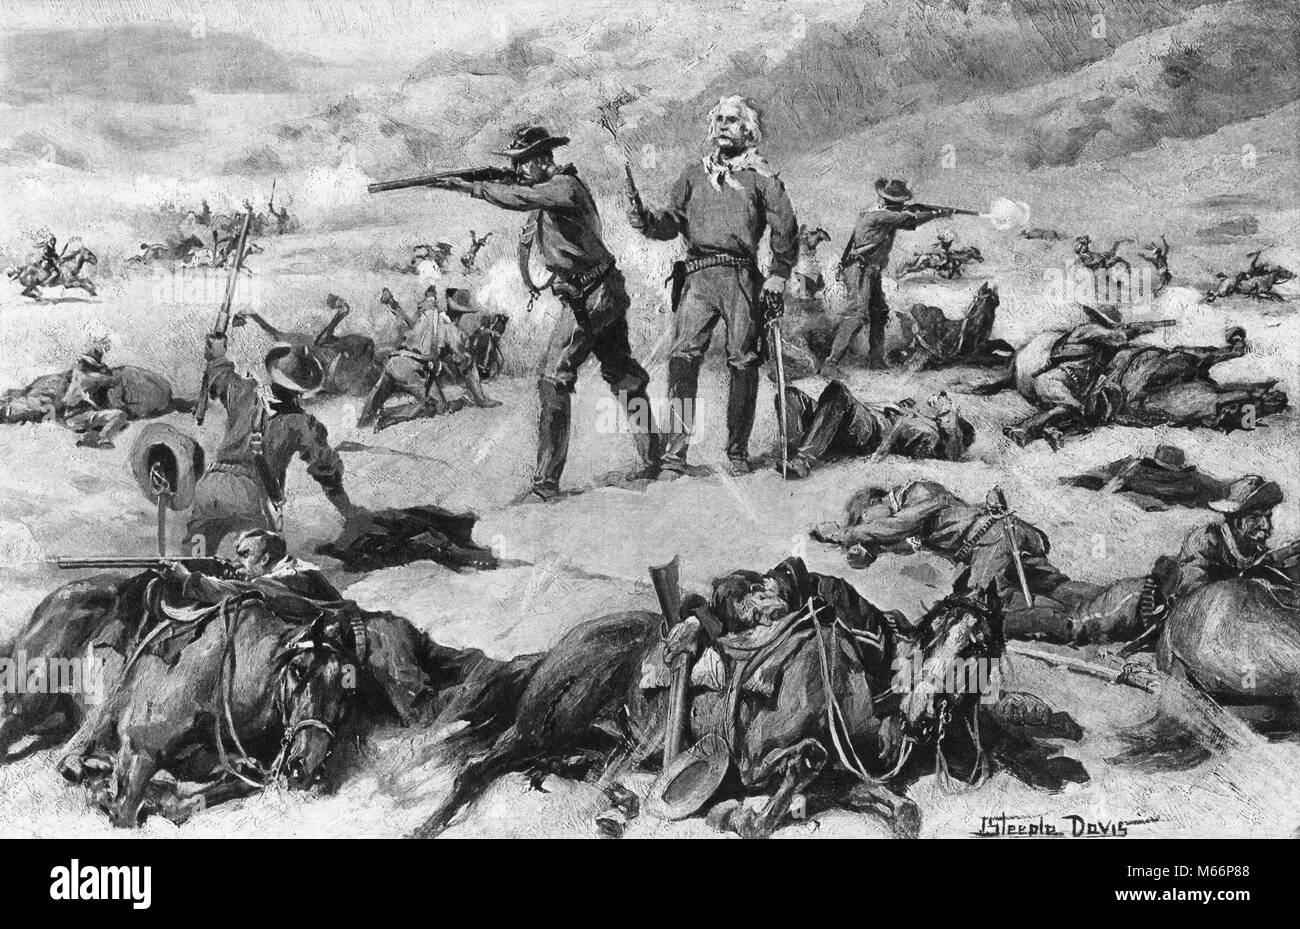 Juni 1876 General George Custer die Schlacht am Little Bighorn Massaker von Lakota und Cheyenne INDIANER Custer's Last Stand-q 60378 CPC 001 HARS TRAURIGKEIT NORDAMERIKA HISTORISCHE NORTH AMERICAN WARS DISASTER SÄUGETIERE ABENTEUER MUT UND BEGEISTERUNG FEUERN SOLDATEN UNIFORMEN EINE PERSON MIT ANDEREN MASSAKER NATIVE AMERICAN KLEINE GRUPPE VON TIEREN PISTOLE NIEDERLAGE FEUERWAFFE MÄNNER SÄUGETIER gebürtige Amerikaner 1876 ARAPAHO B&W BIGHORN SCHWARZ UND WEISS KAUKASISCHEN ETHNIE KAVALLERIE CHEYENNE CUSTER CUSTER'S George Armstrong Custer GROSSE SIOUX KRIEG indischen Kriegen INDIGENEN JUNI 7. JUNI GETÖTET LAKOTA LETZTE MASSAKRIERT Stockfoto